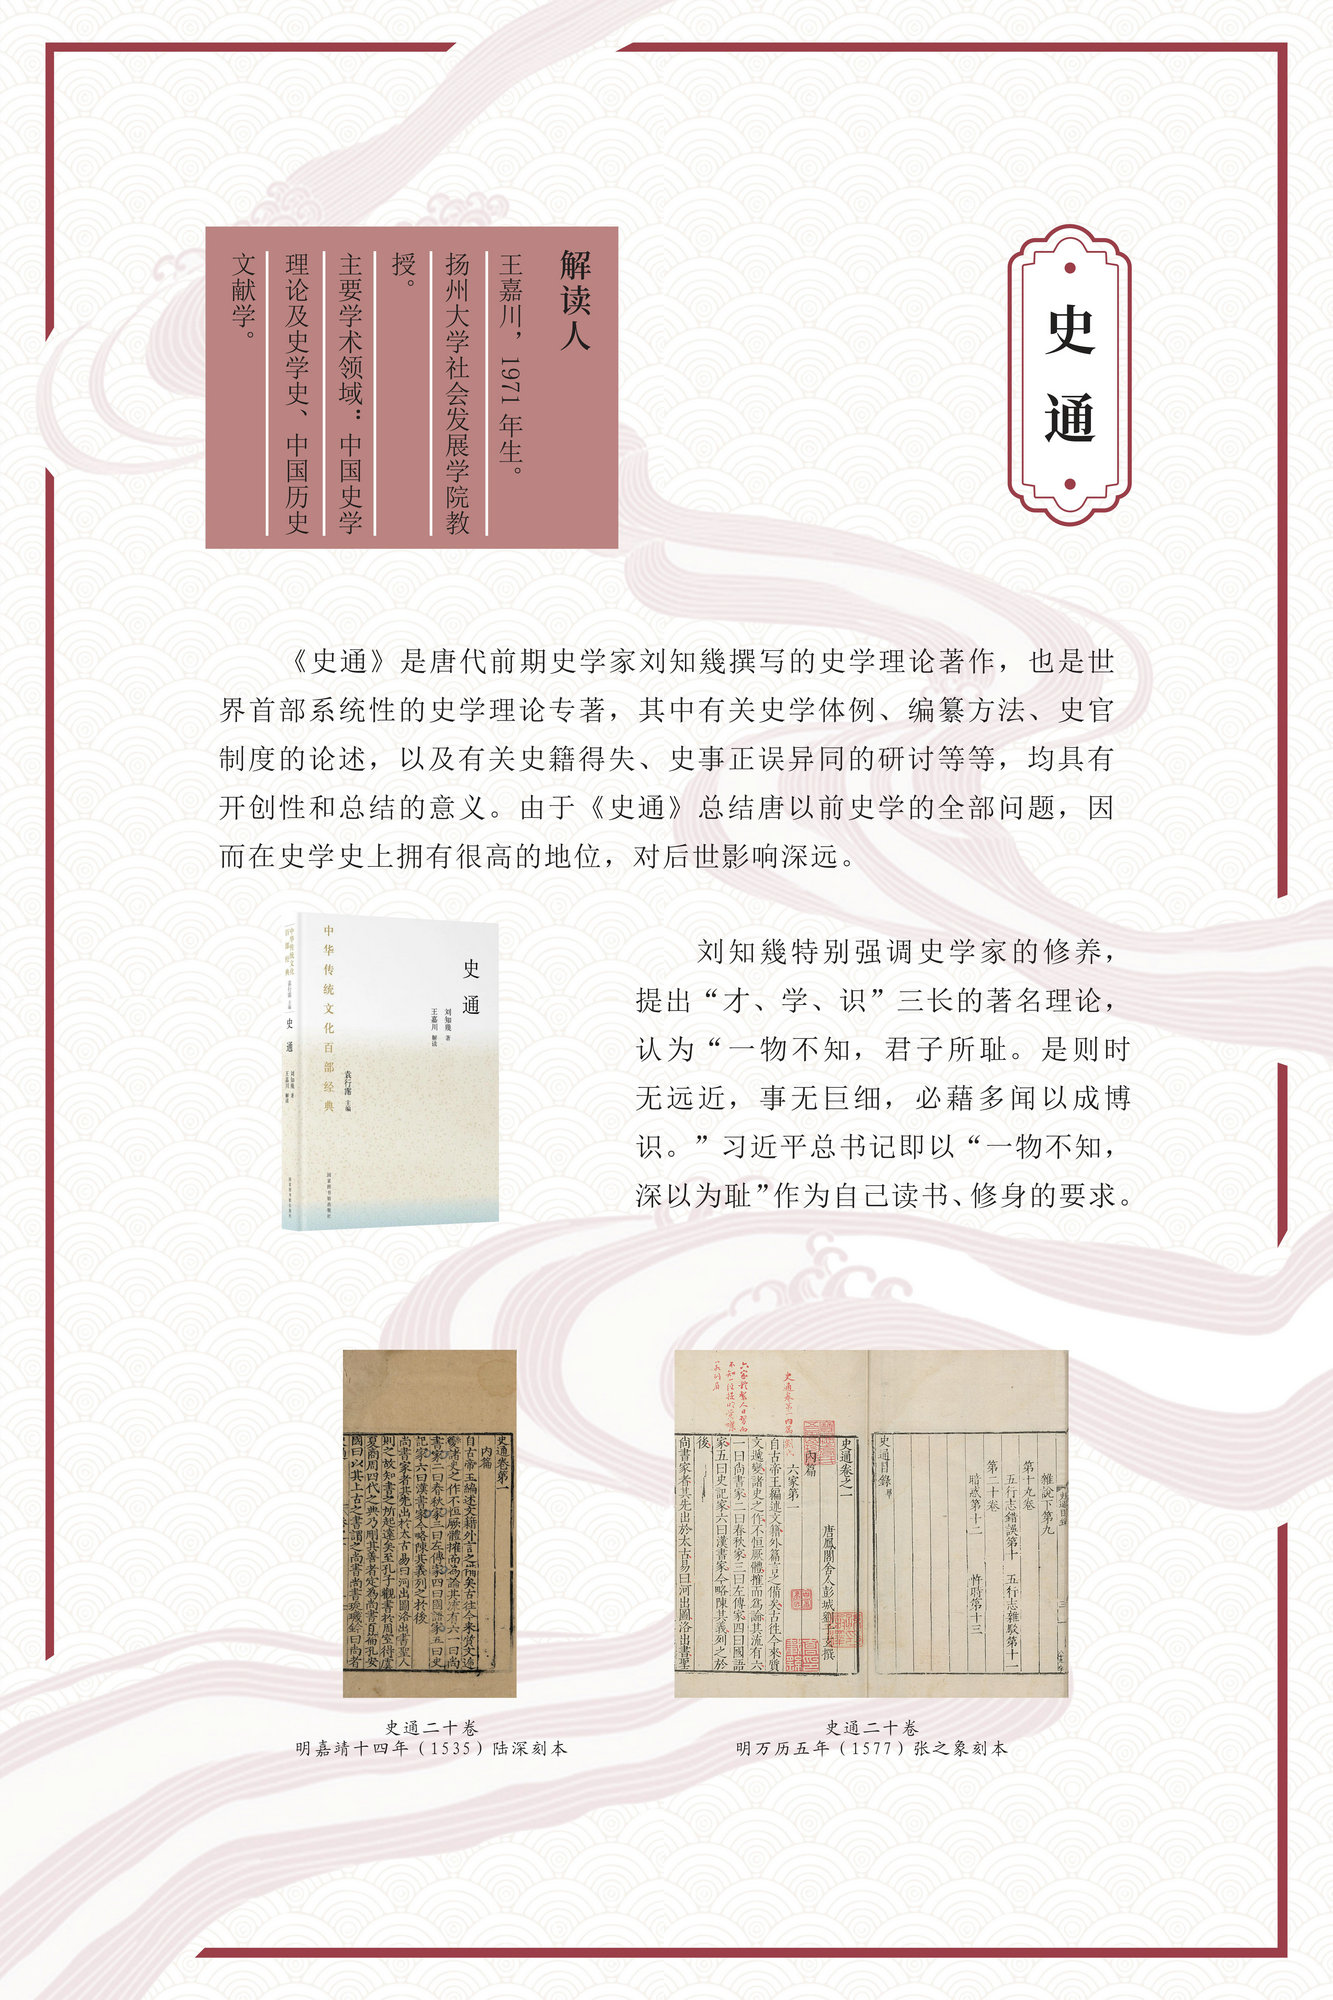 “激活经典 熔古铸今”——《中华传统文化百部经典》出版成果展_图16